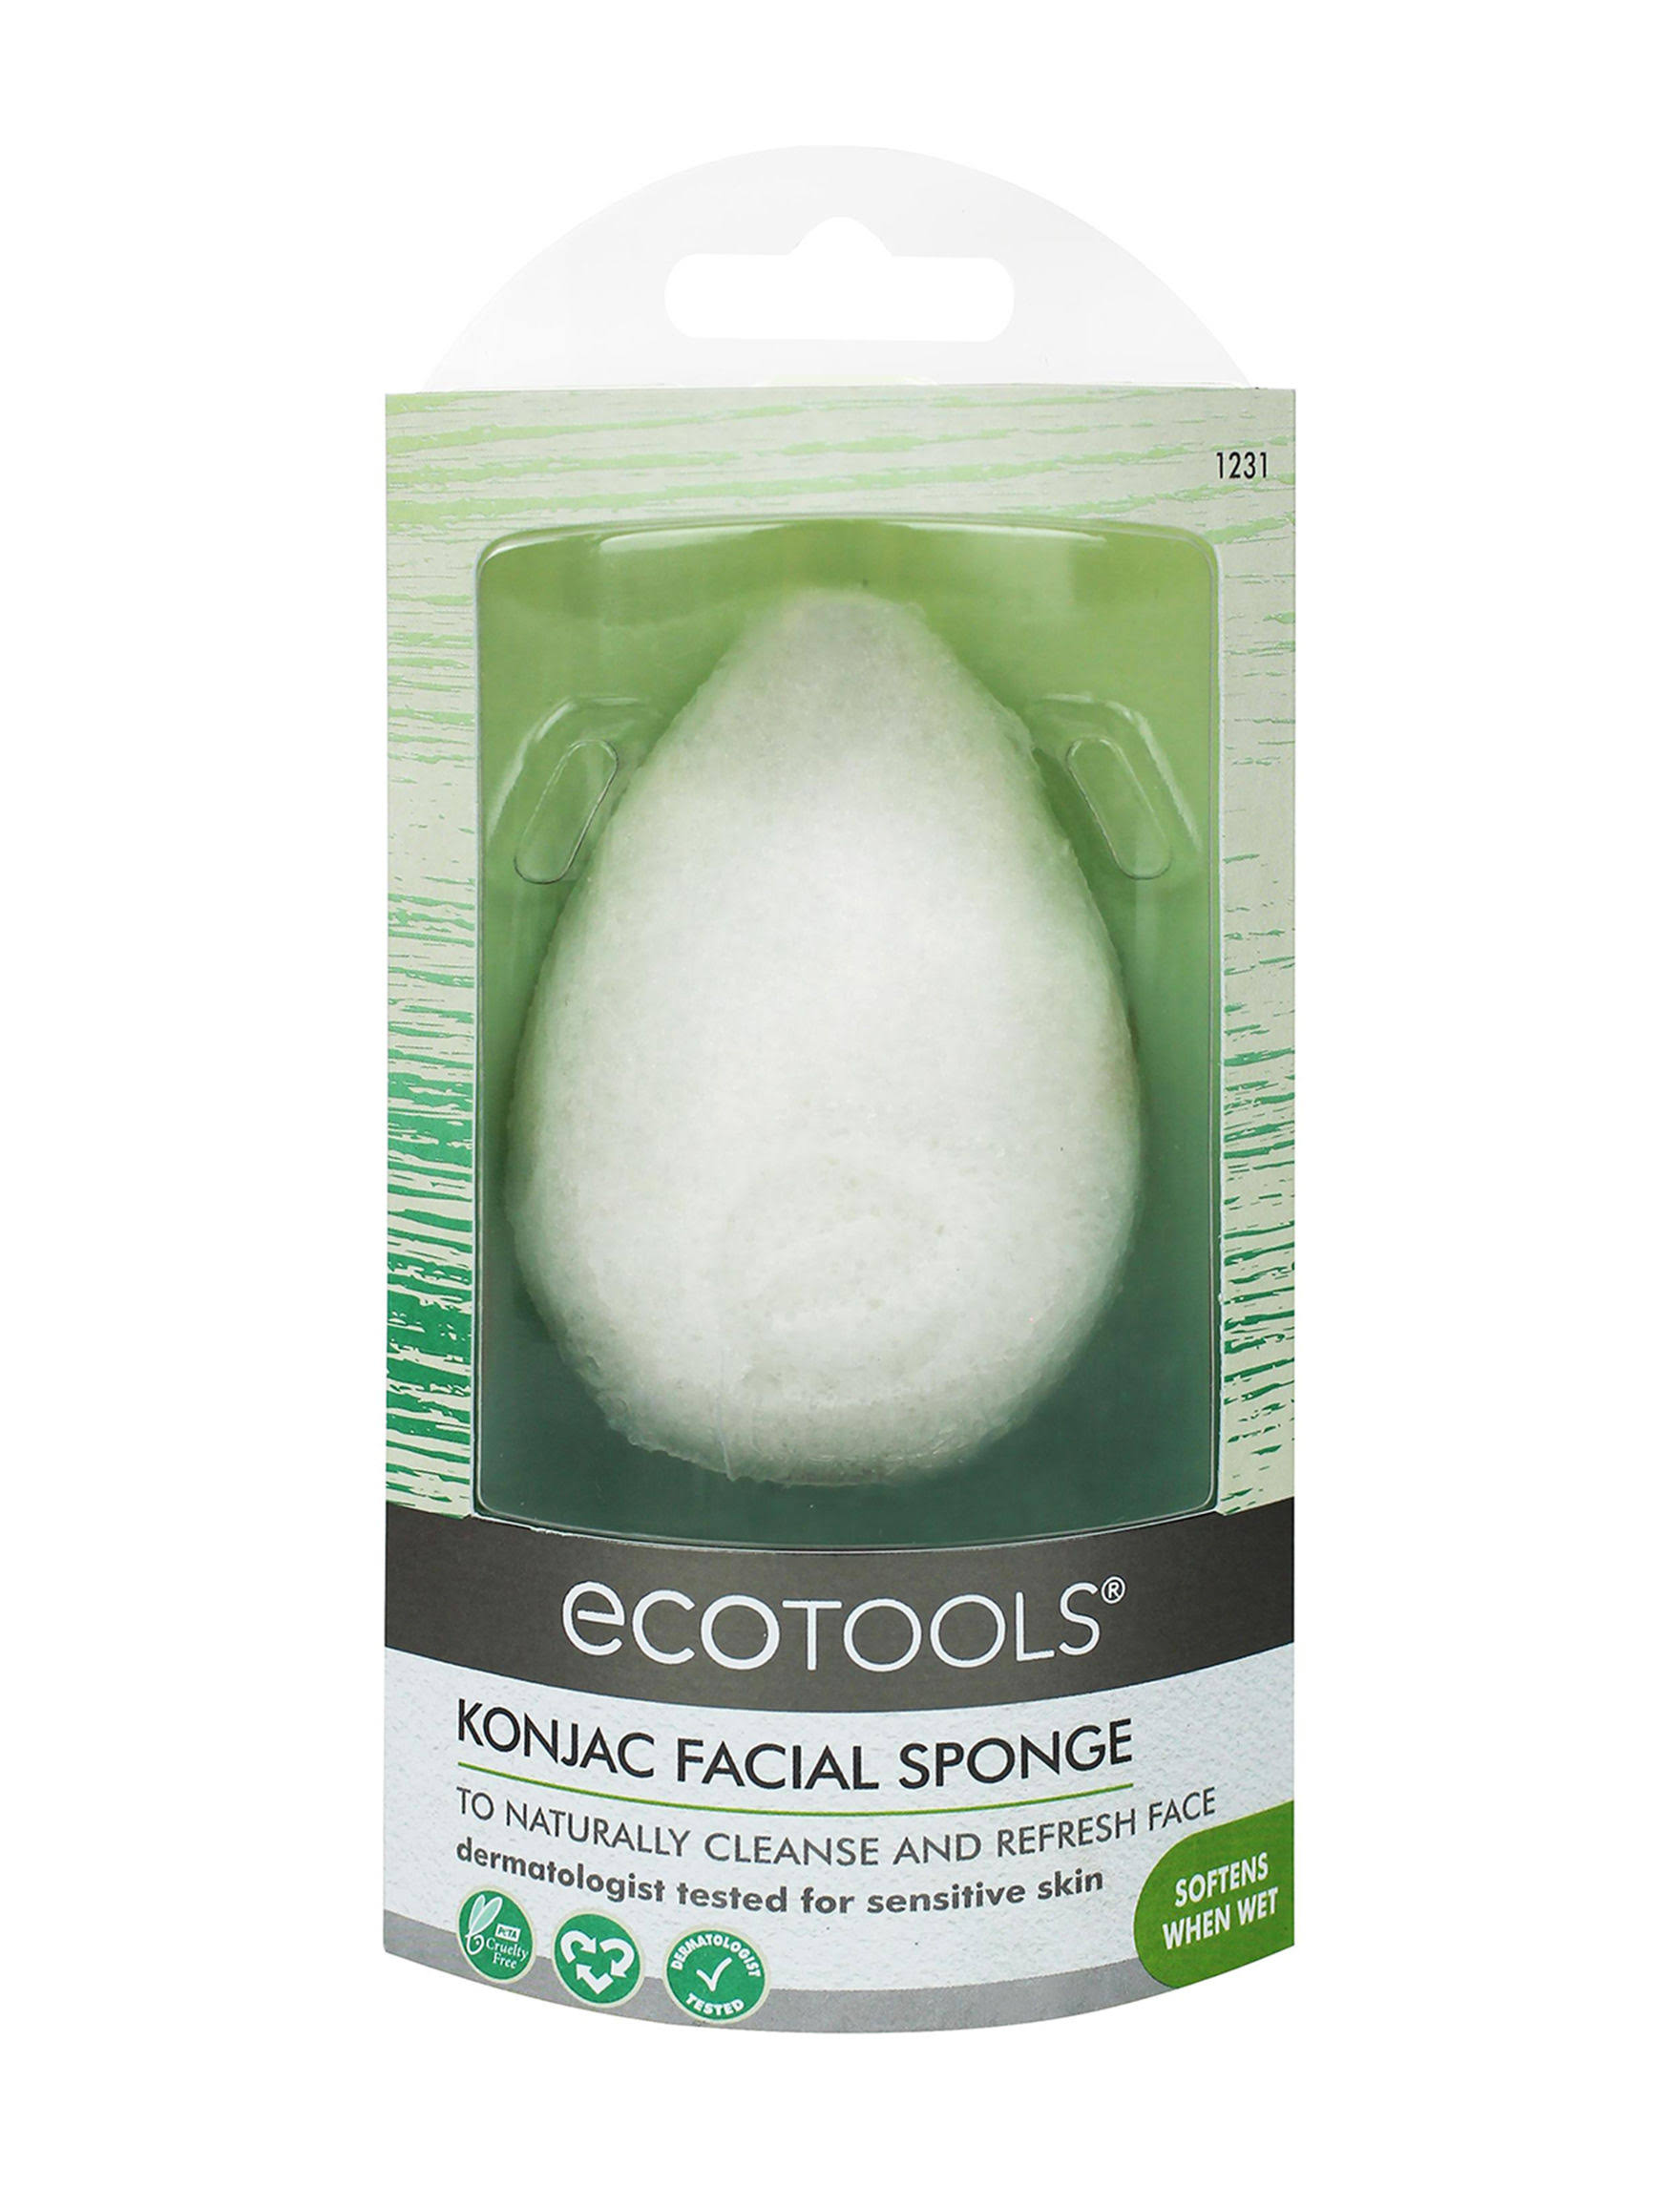 Ecotools Facial Sponge, Pure Complexion, Sensitive Skin